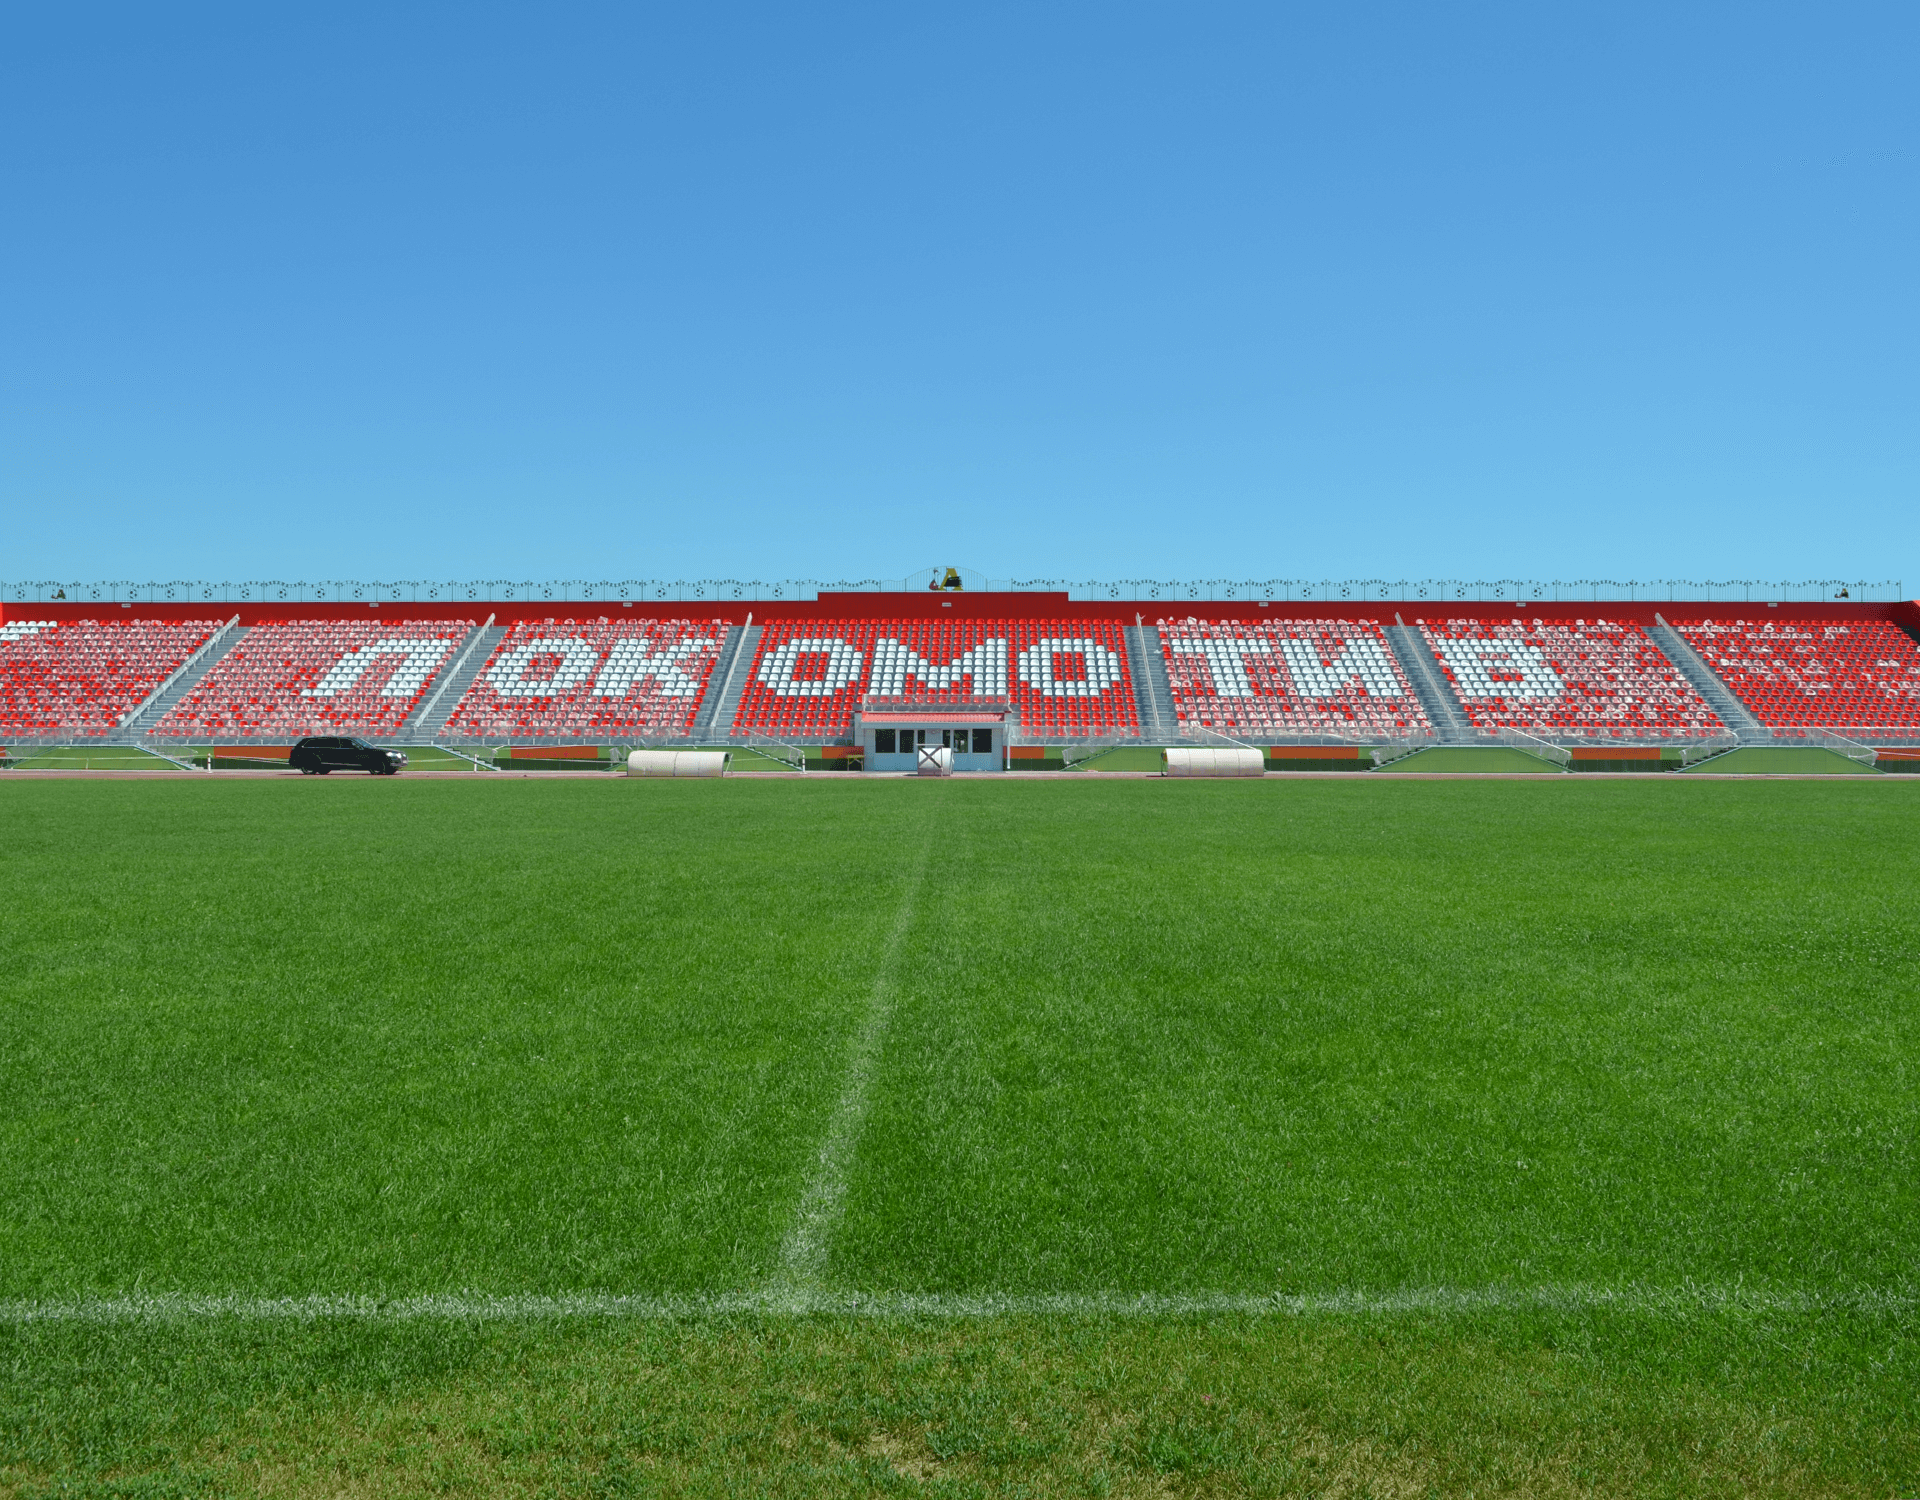 Η Isomat στο Γήπεδο "Lokomotiv", Liski, Ρωσία